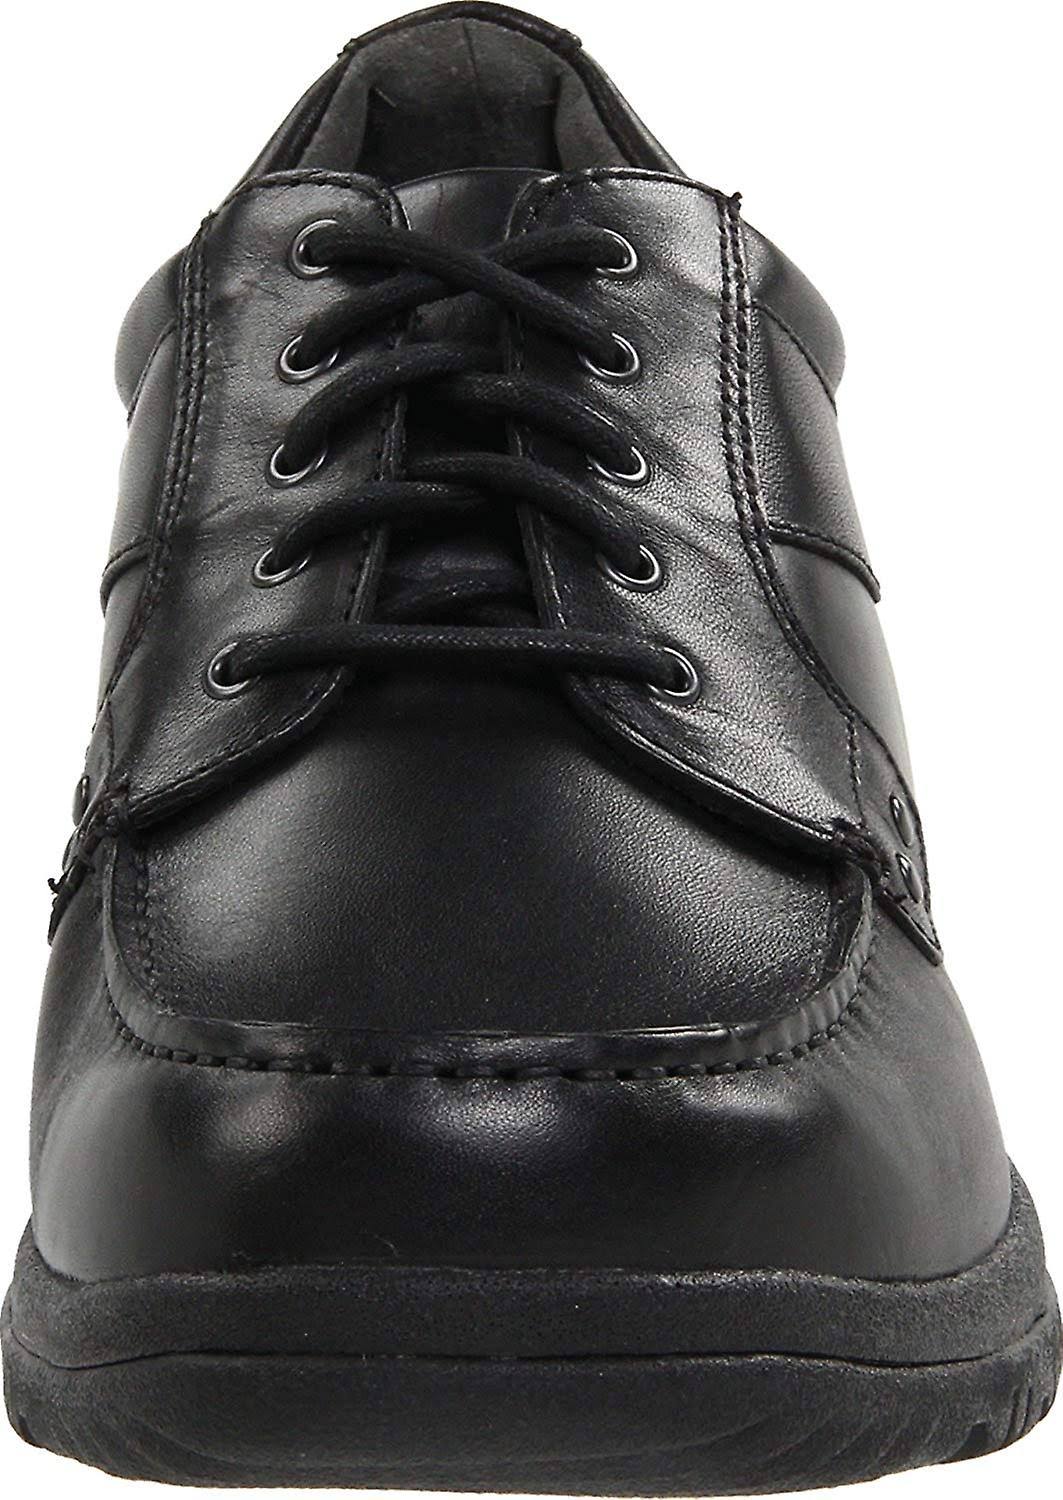 Dansko Men's Wyatt Full Grain Oxford Shoes - Black, 12.5 US